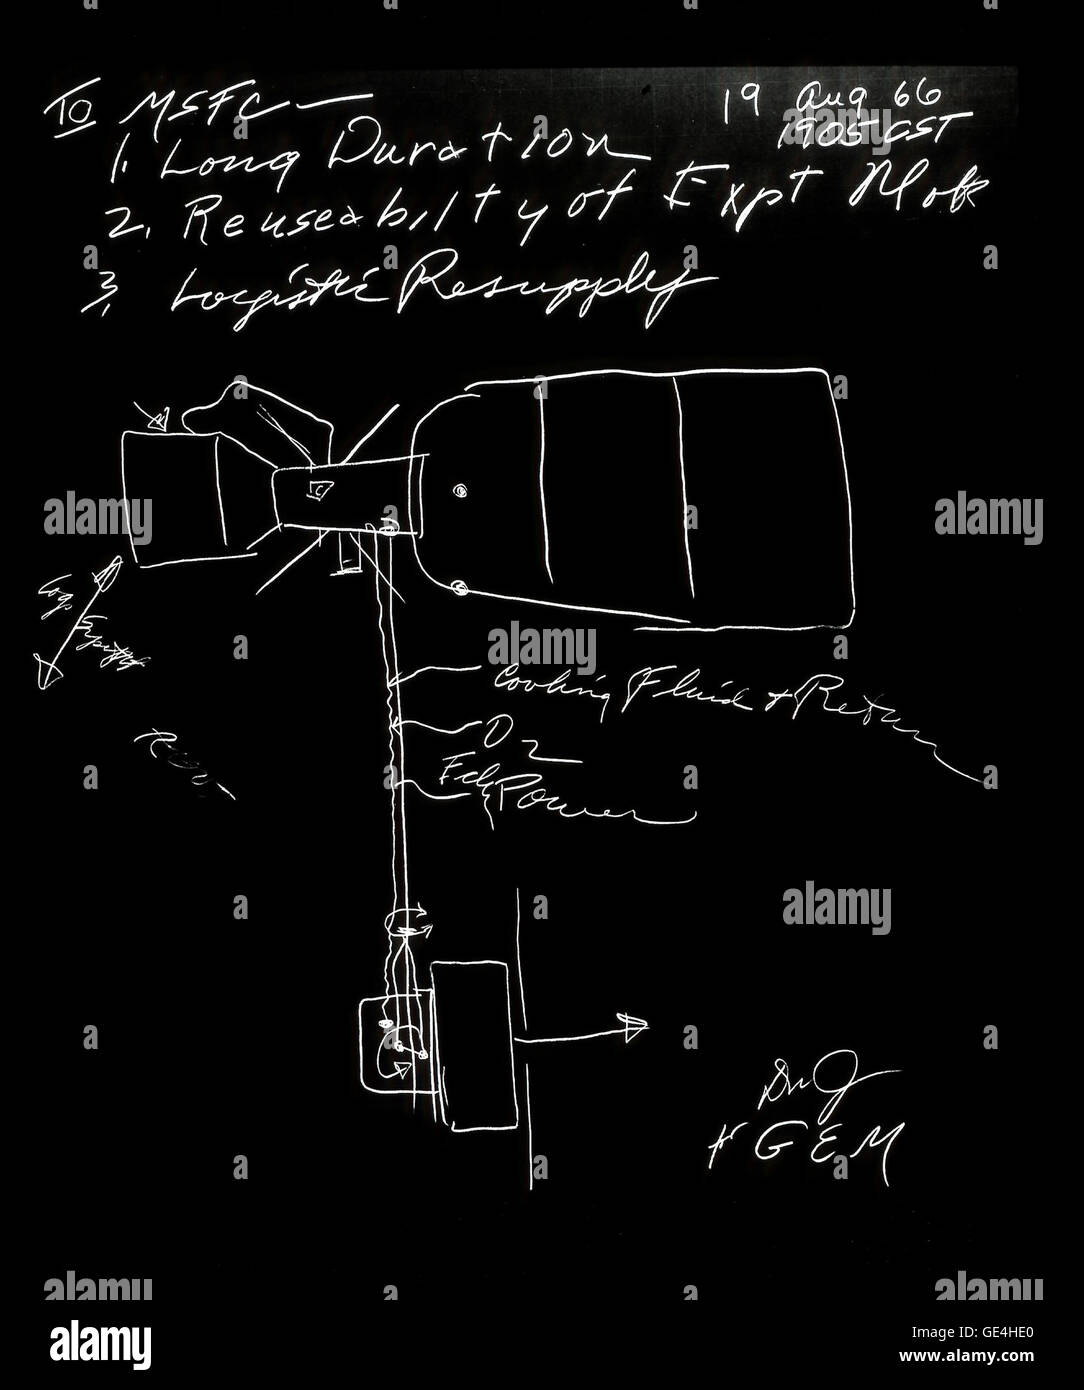 Dies ist eine Skizze von Skylab, wie von George E. Mueller gezeichnet, NASA associate Administrator für bemannte Raumfahrt. Dieses Konzept, die Zeichnung entstand bei einem Treffen am Marshall Space Flight Center am 19. August 1966. Das Bild beschreibt die Station Hauptelemente. Im Jahre 1970 wurde die Station als Skylab bekannt. Drei bemannten Skylab-Missionen (Skylab 2 im Mai 1973; Skylab 3 im Juli 1973; und Skylab 4 im November 1973) wurden auf dem geflogen wurden Experimente durchgeführt,: Weltraumwissenschaft, Ressourcen der Erde, Life Sciences, Weltraumtechnik und Studentenprojekte.   Bild-Nr.: 8886938 Stockfoto